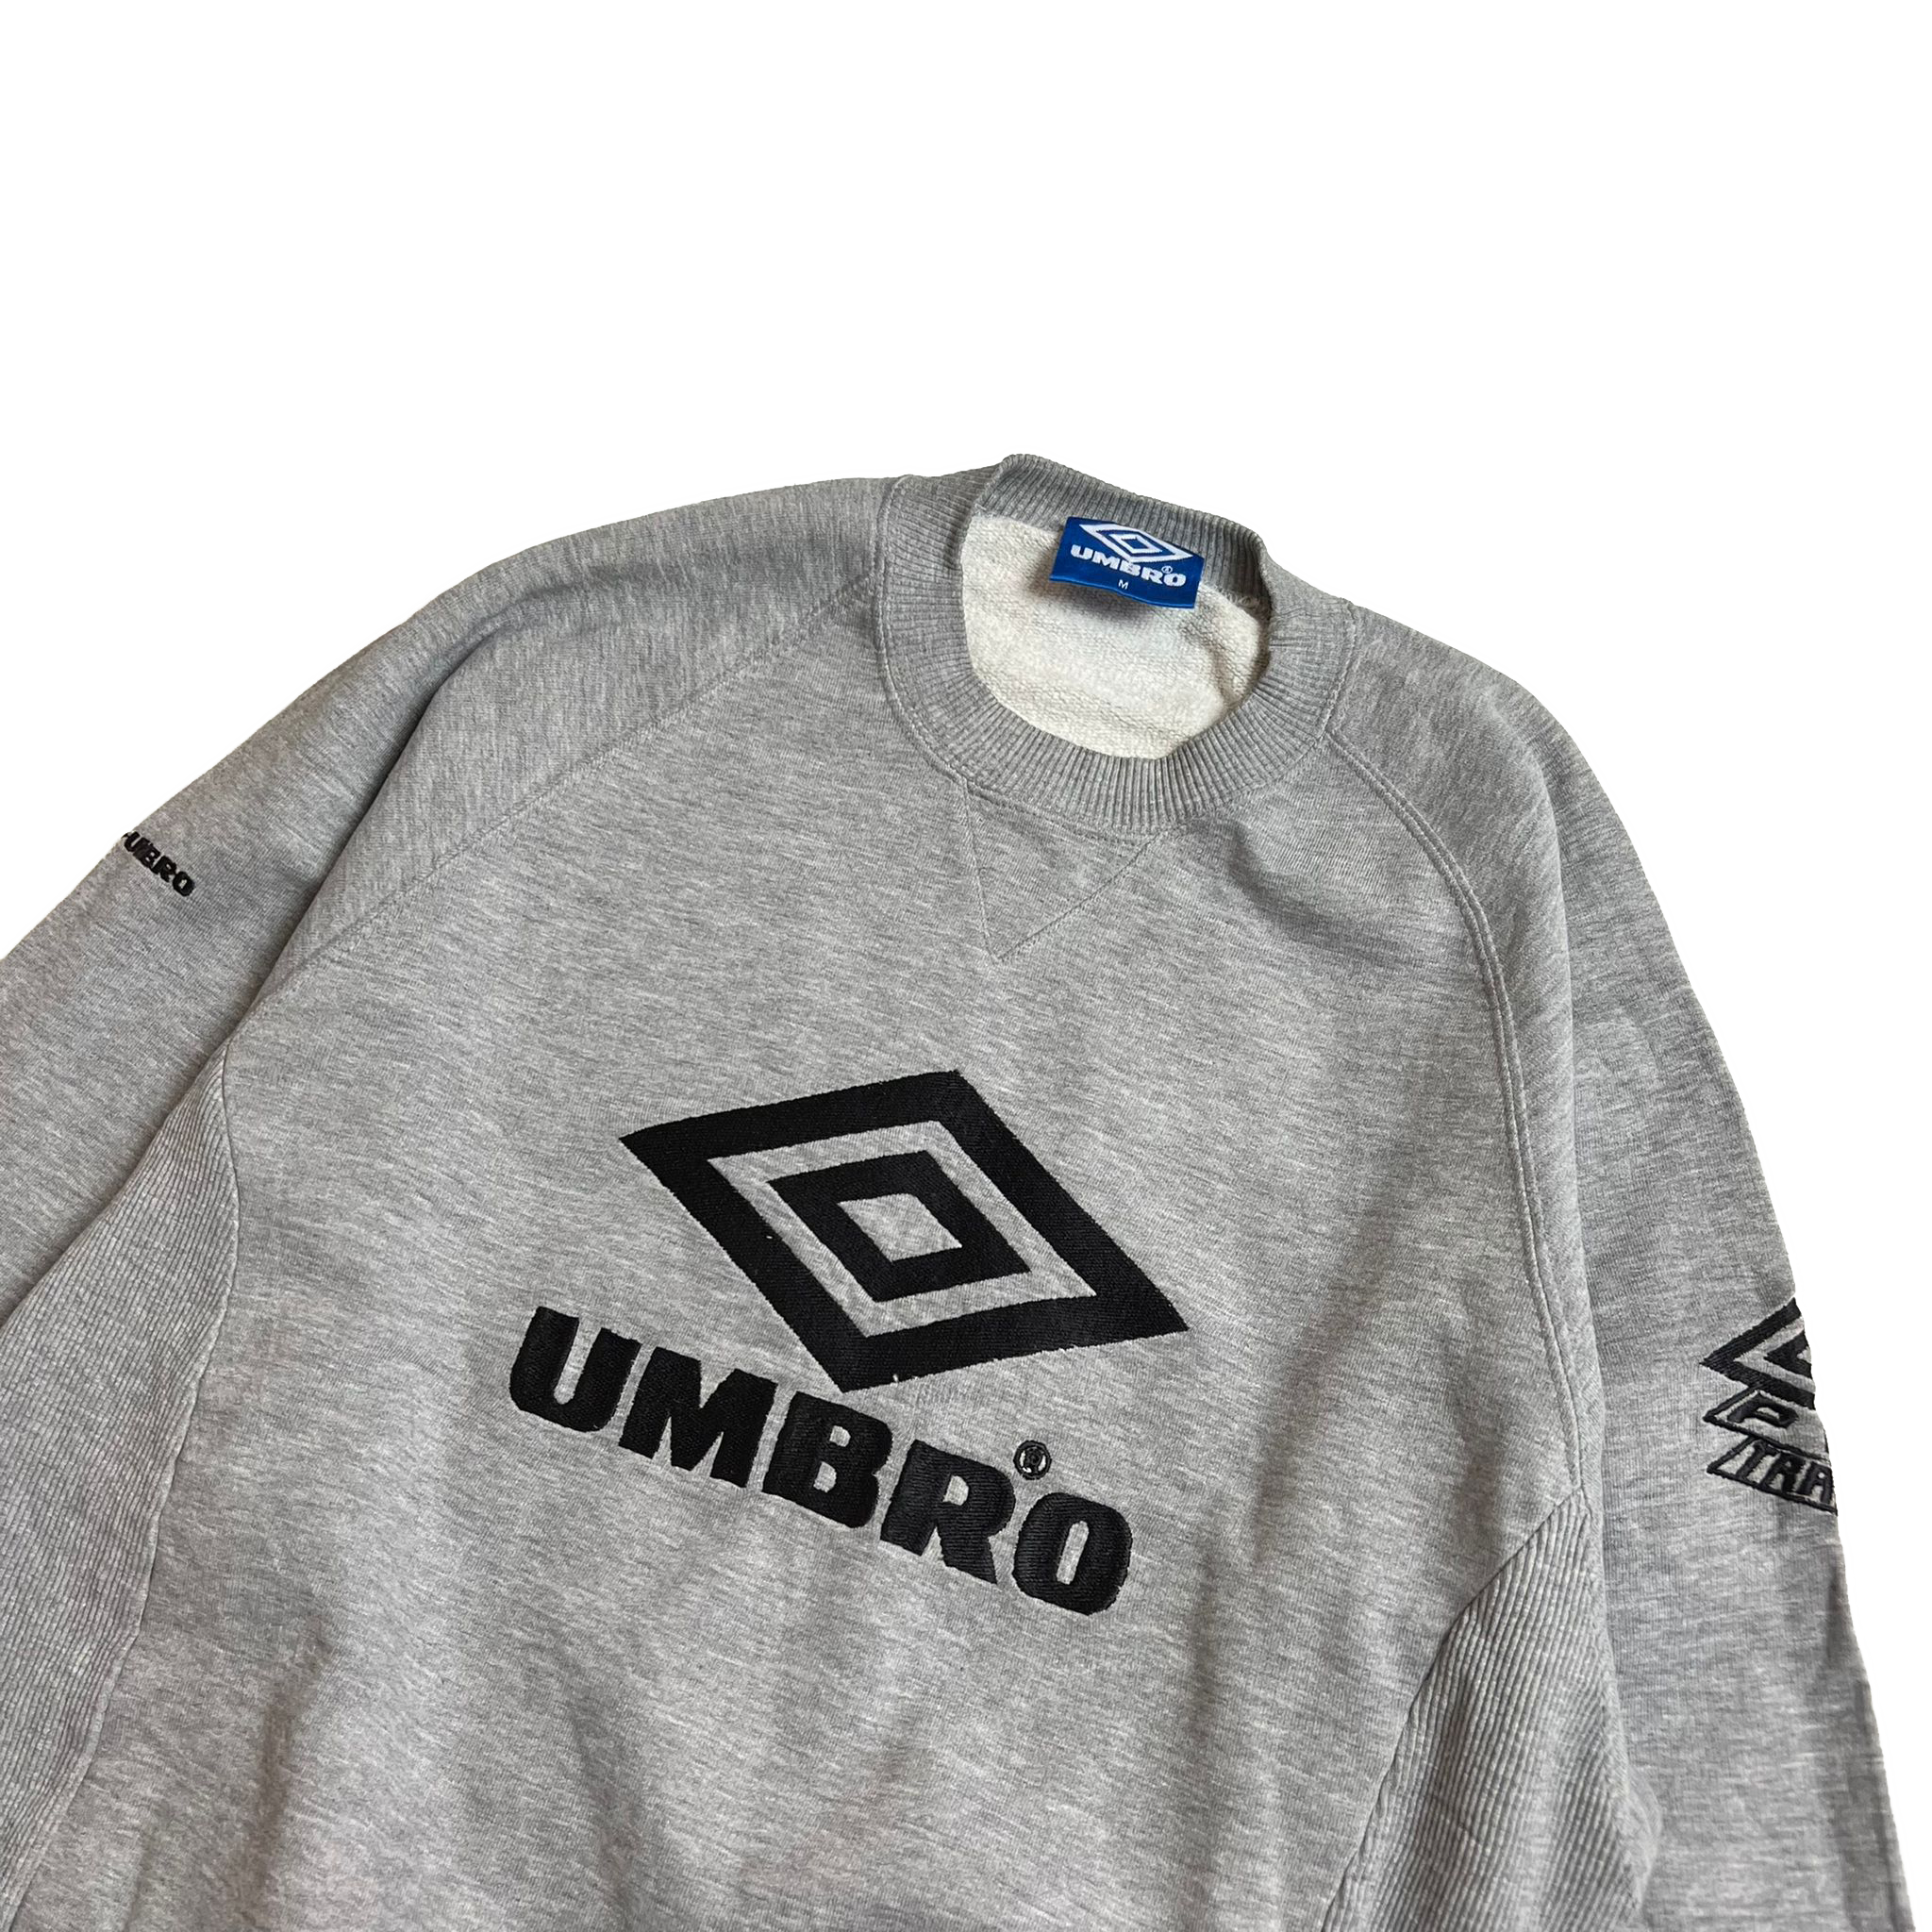 90's Umbro sweatshirt